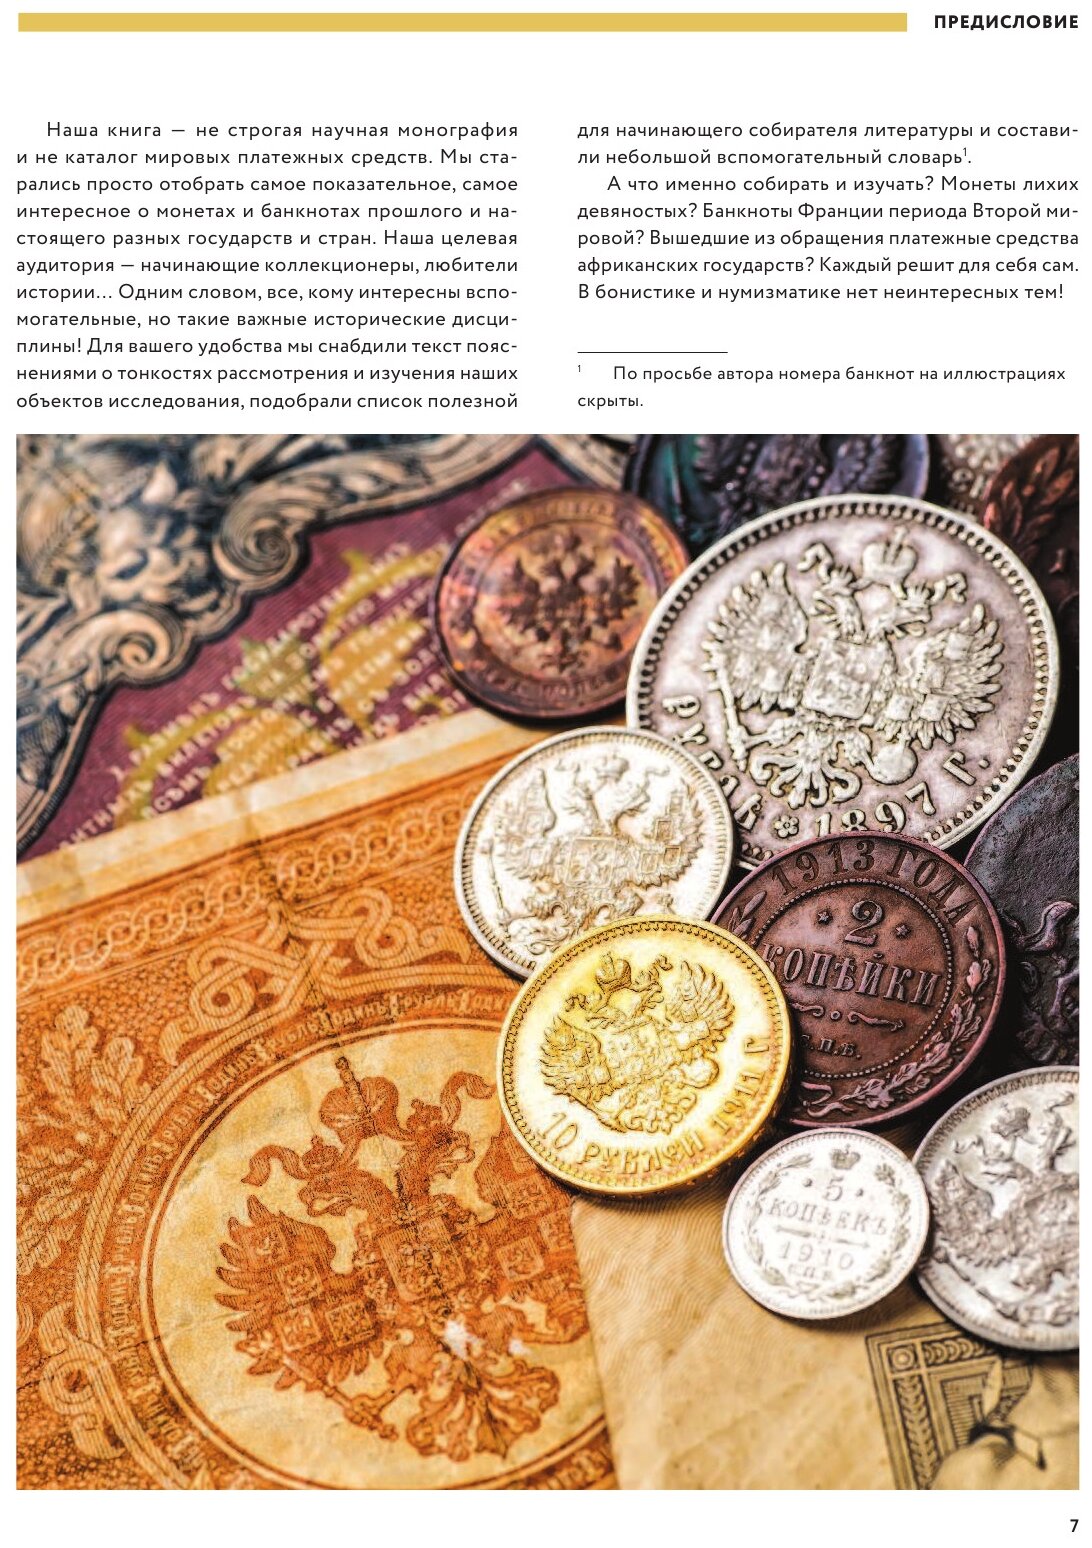 Самые известные монеты и банкноты мира. Большая иллюстрированная энциклопедия - фото №4